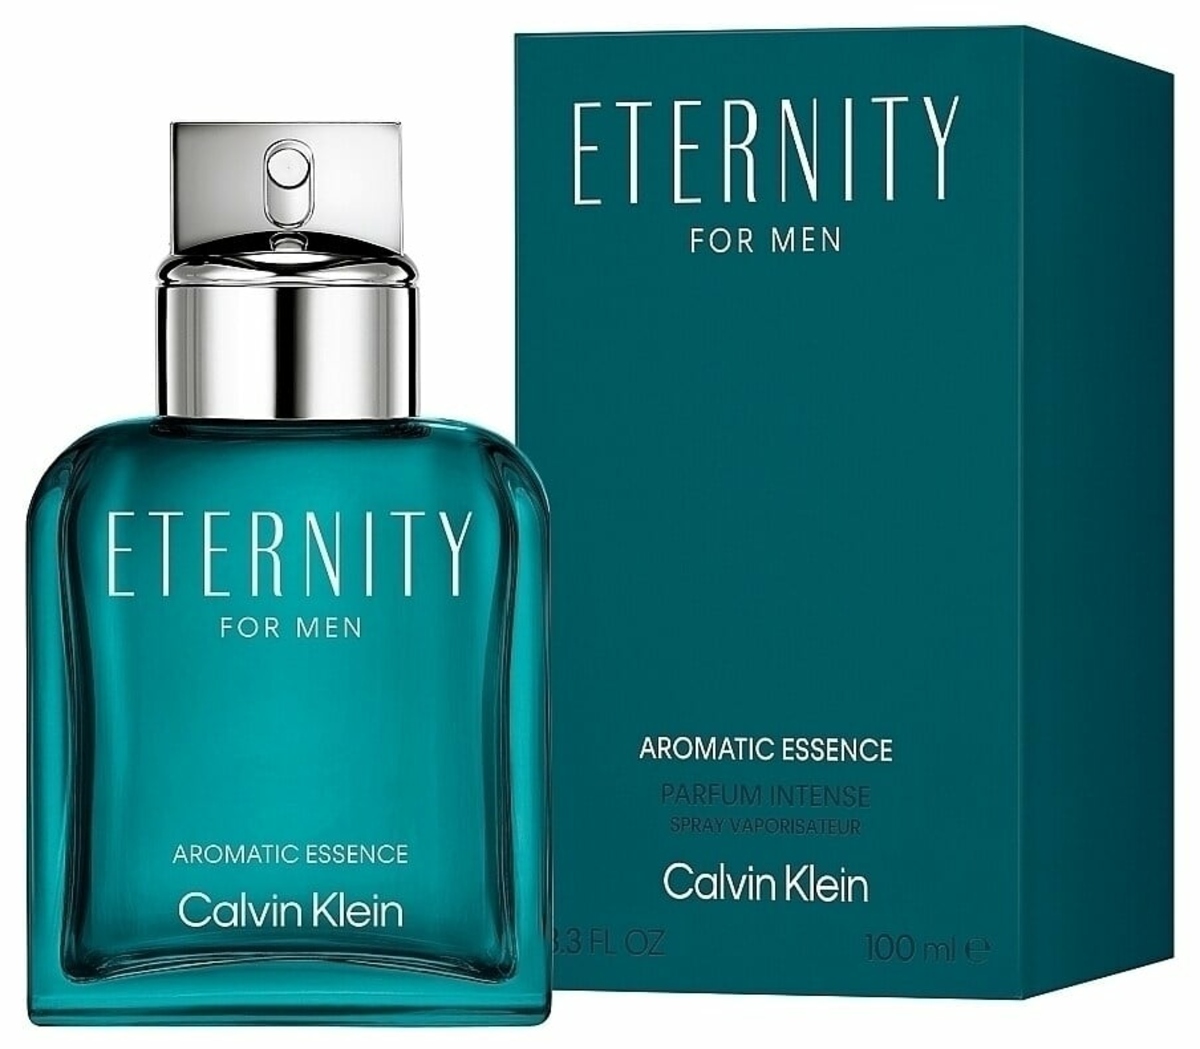 Eternity for Men Aromatic Essence - Calvin Klein